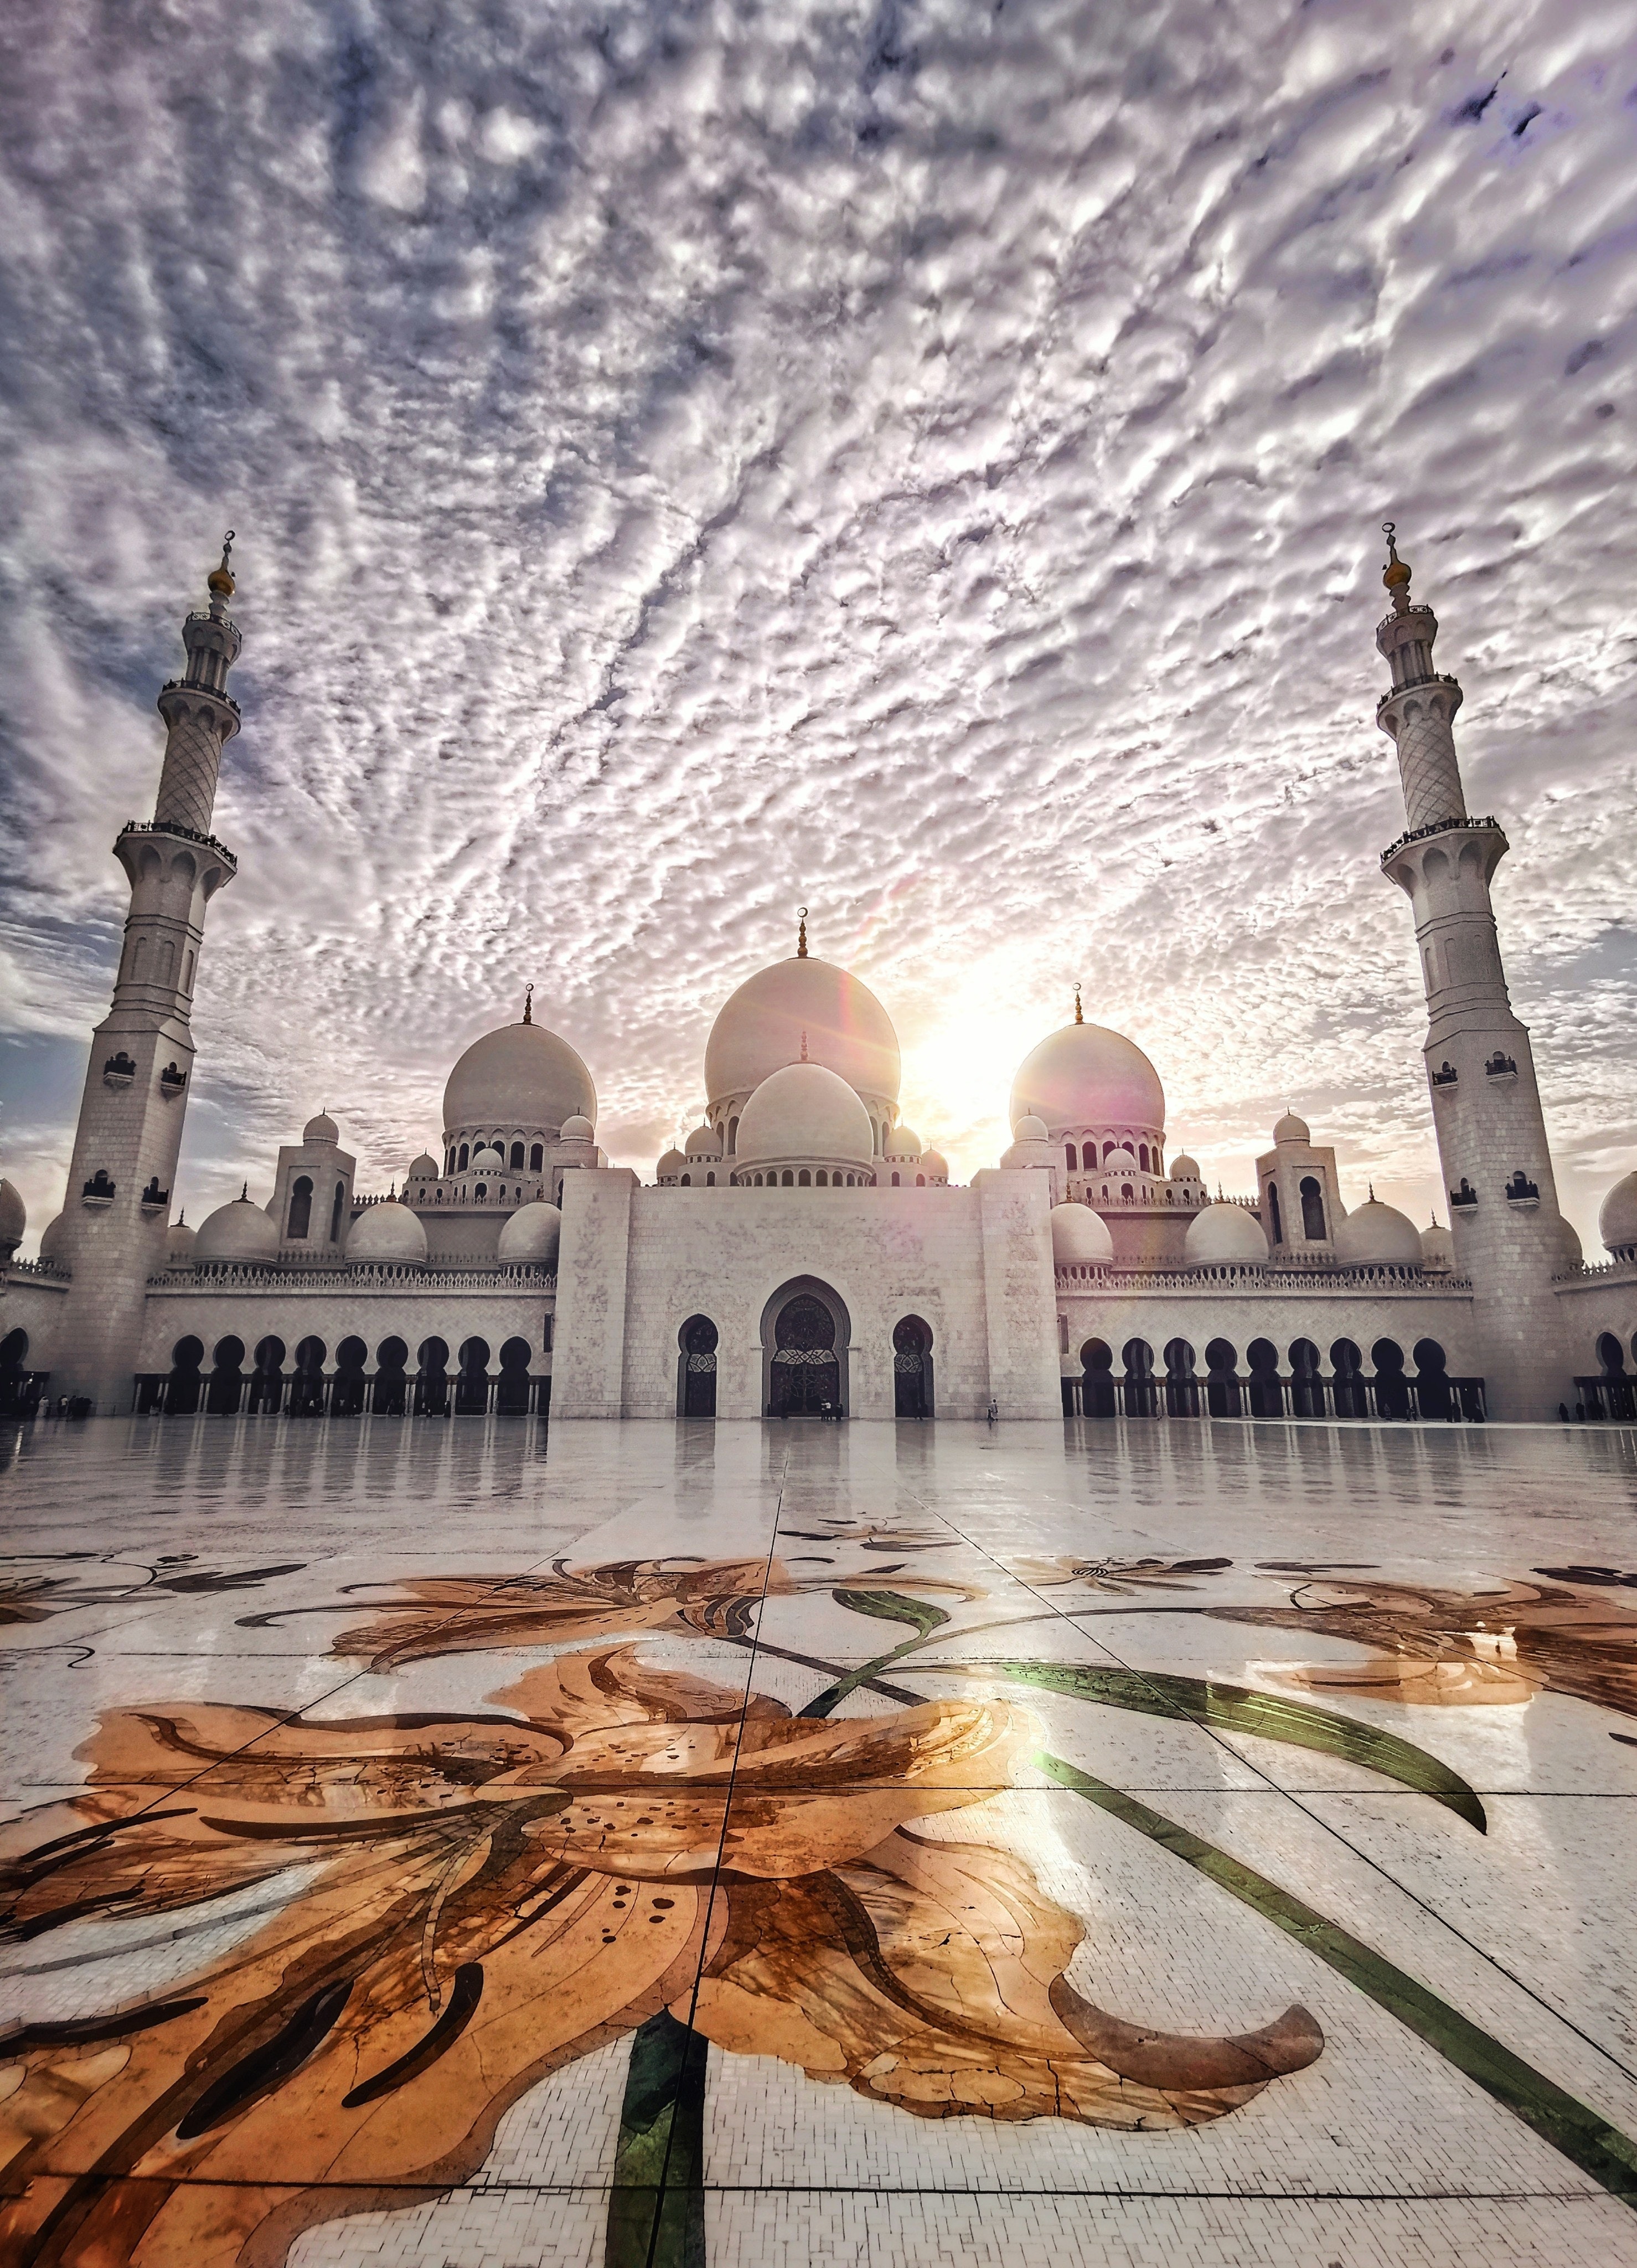 Best Sheikh Zayed Mosque Photo · 100% Free Downloads